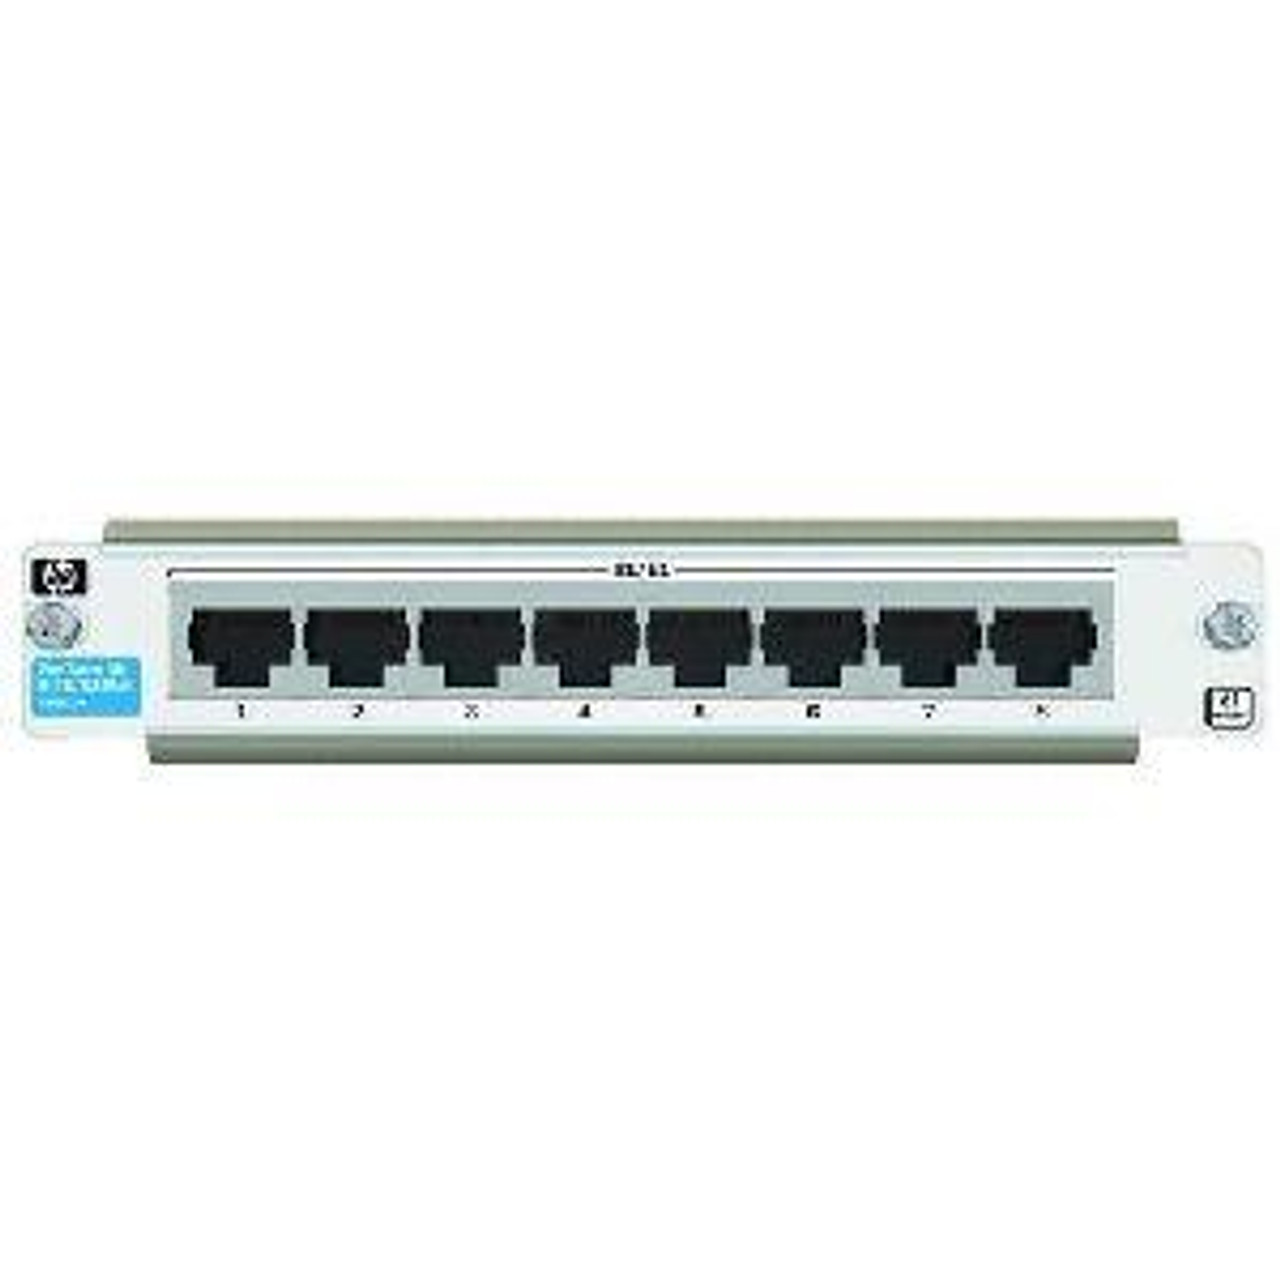 J8463A HP ProCurve Secure Router dl Wide 8xT1/E1 Module 8 x T1/E1 WAN Expansion Module